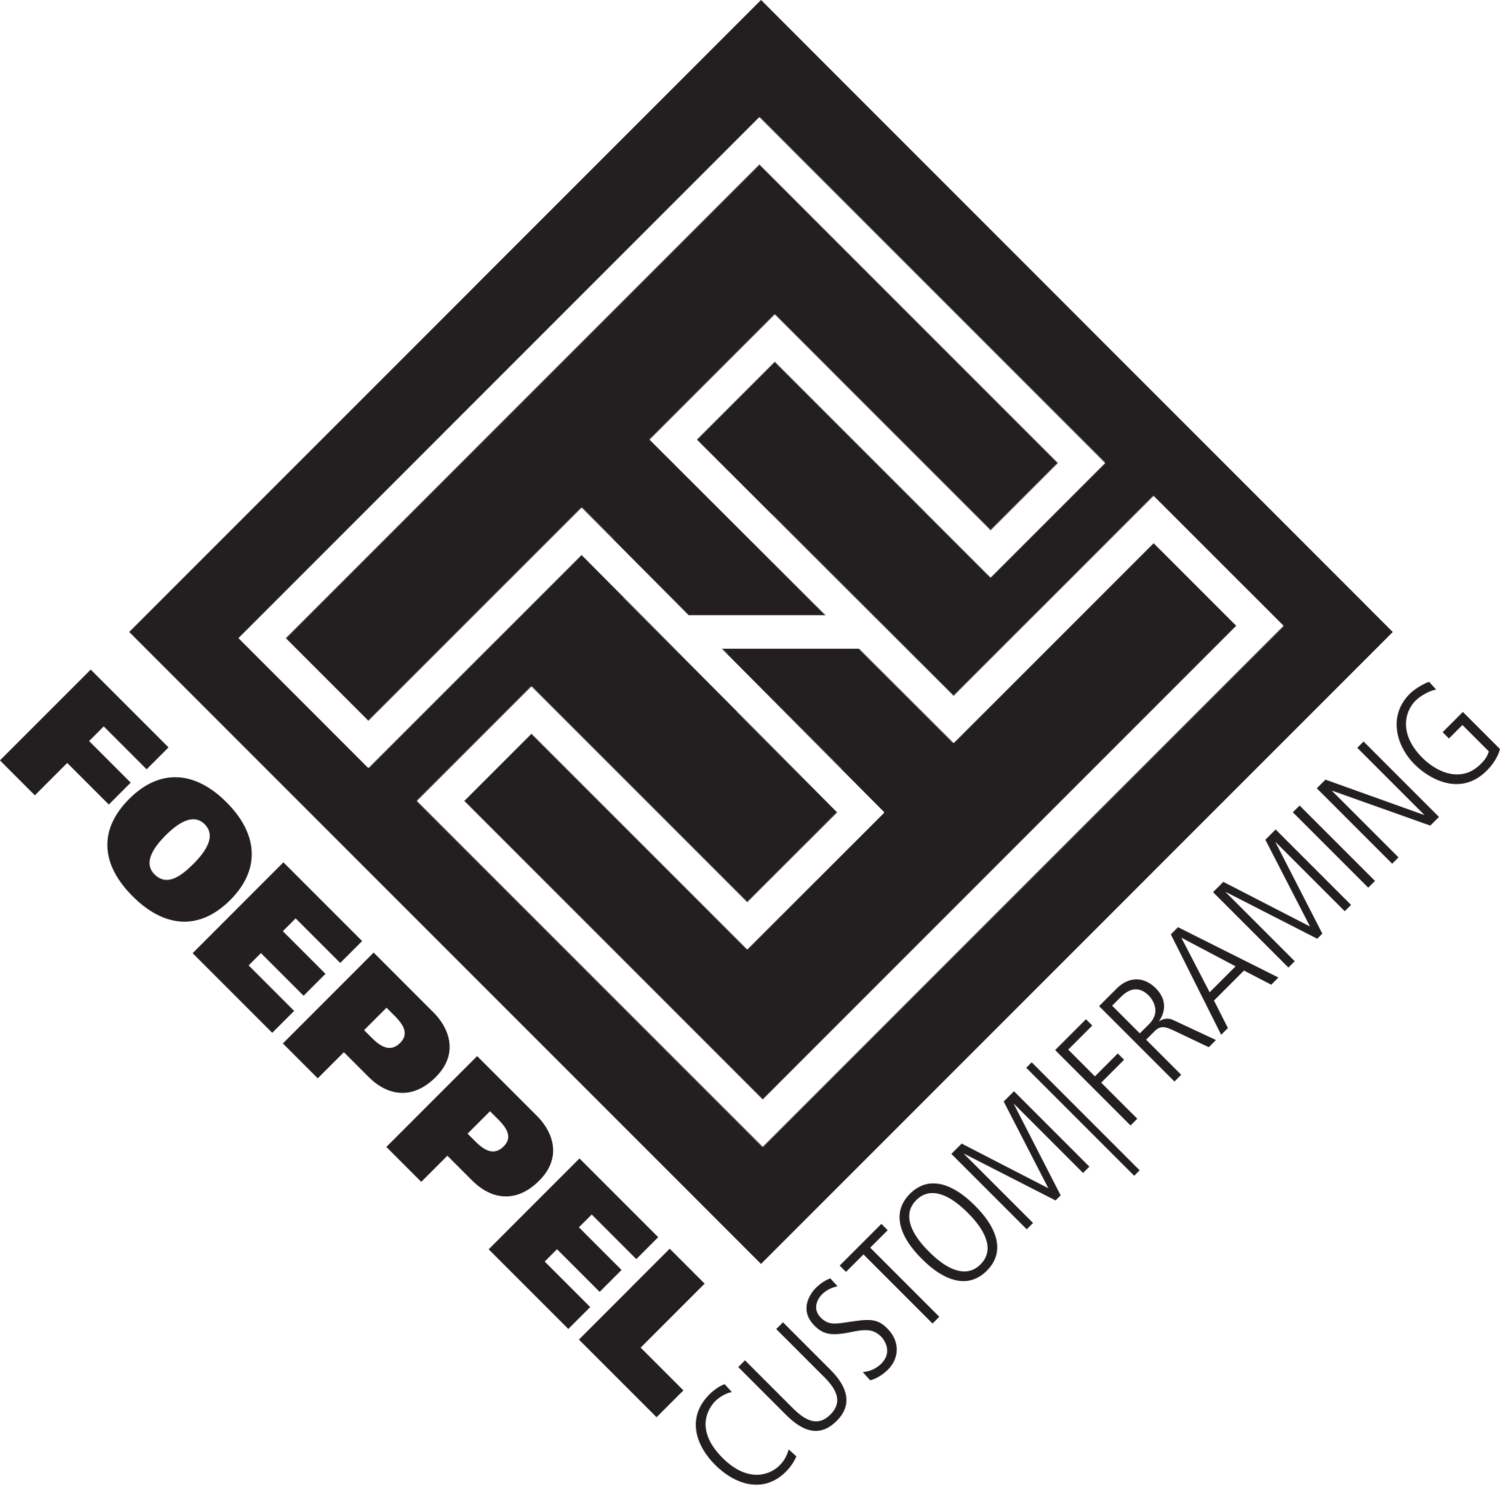 Foeppel Custom Framing